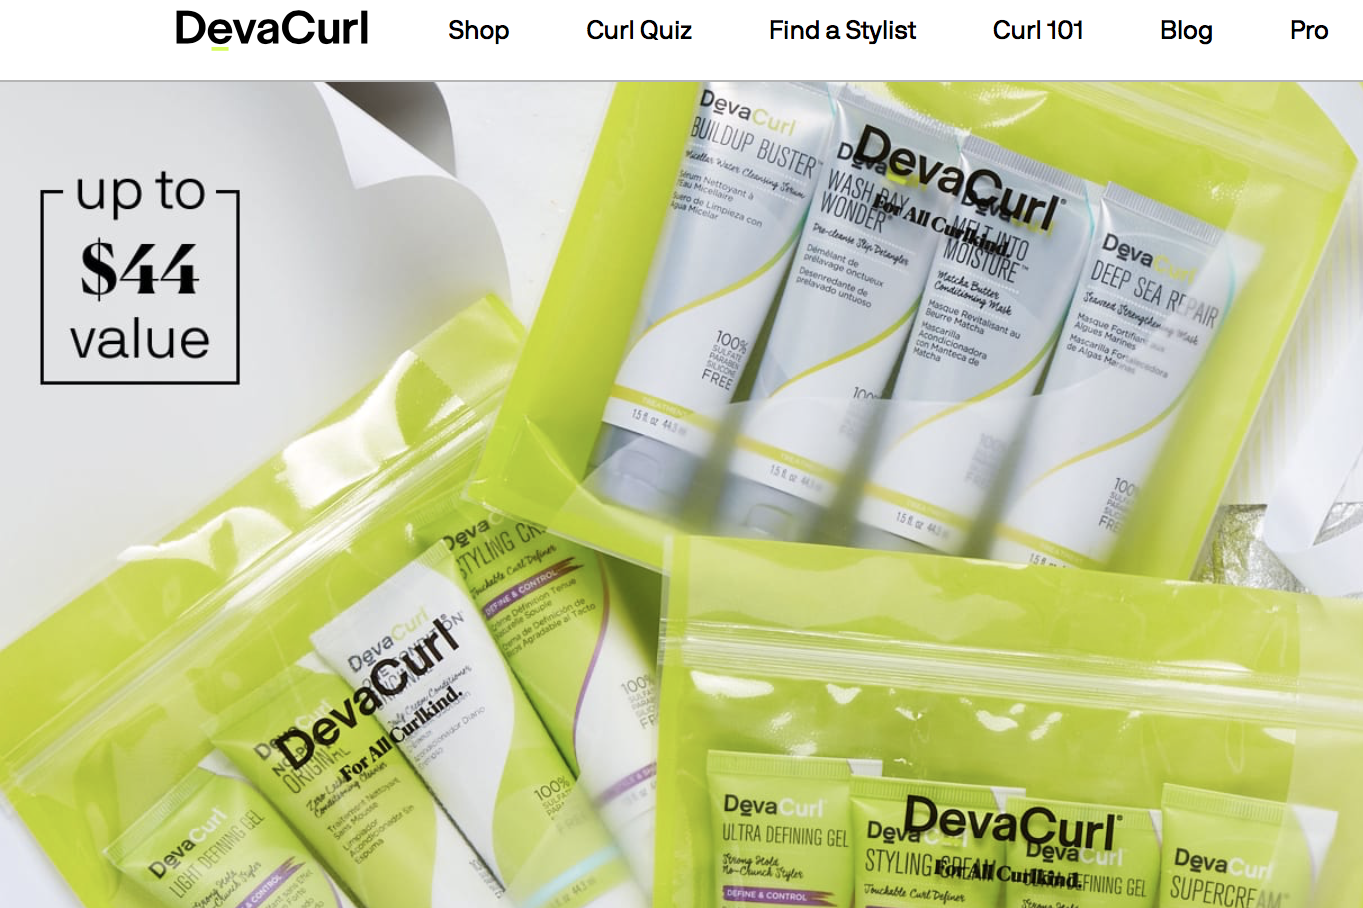 德国汉高收购纽约专业卷发护理品牌 DevaCurl，加码美国市场美容护理业务